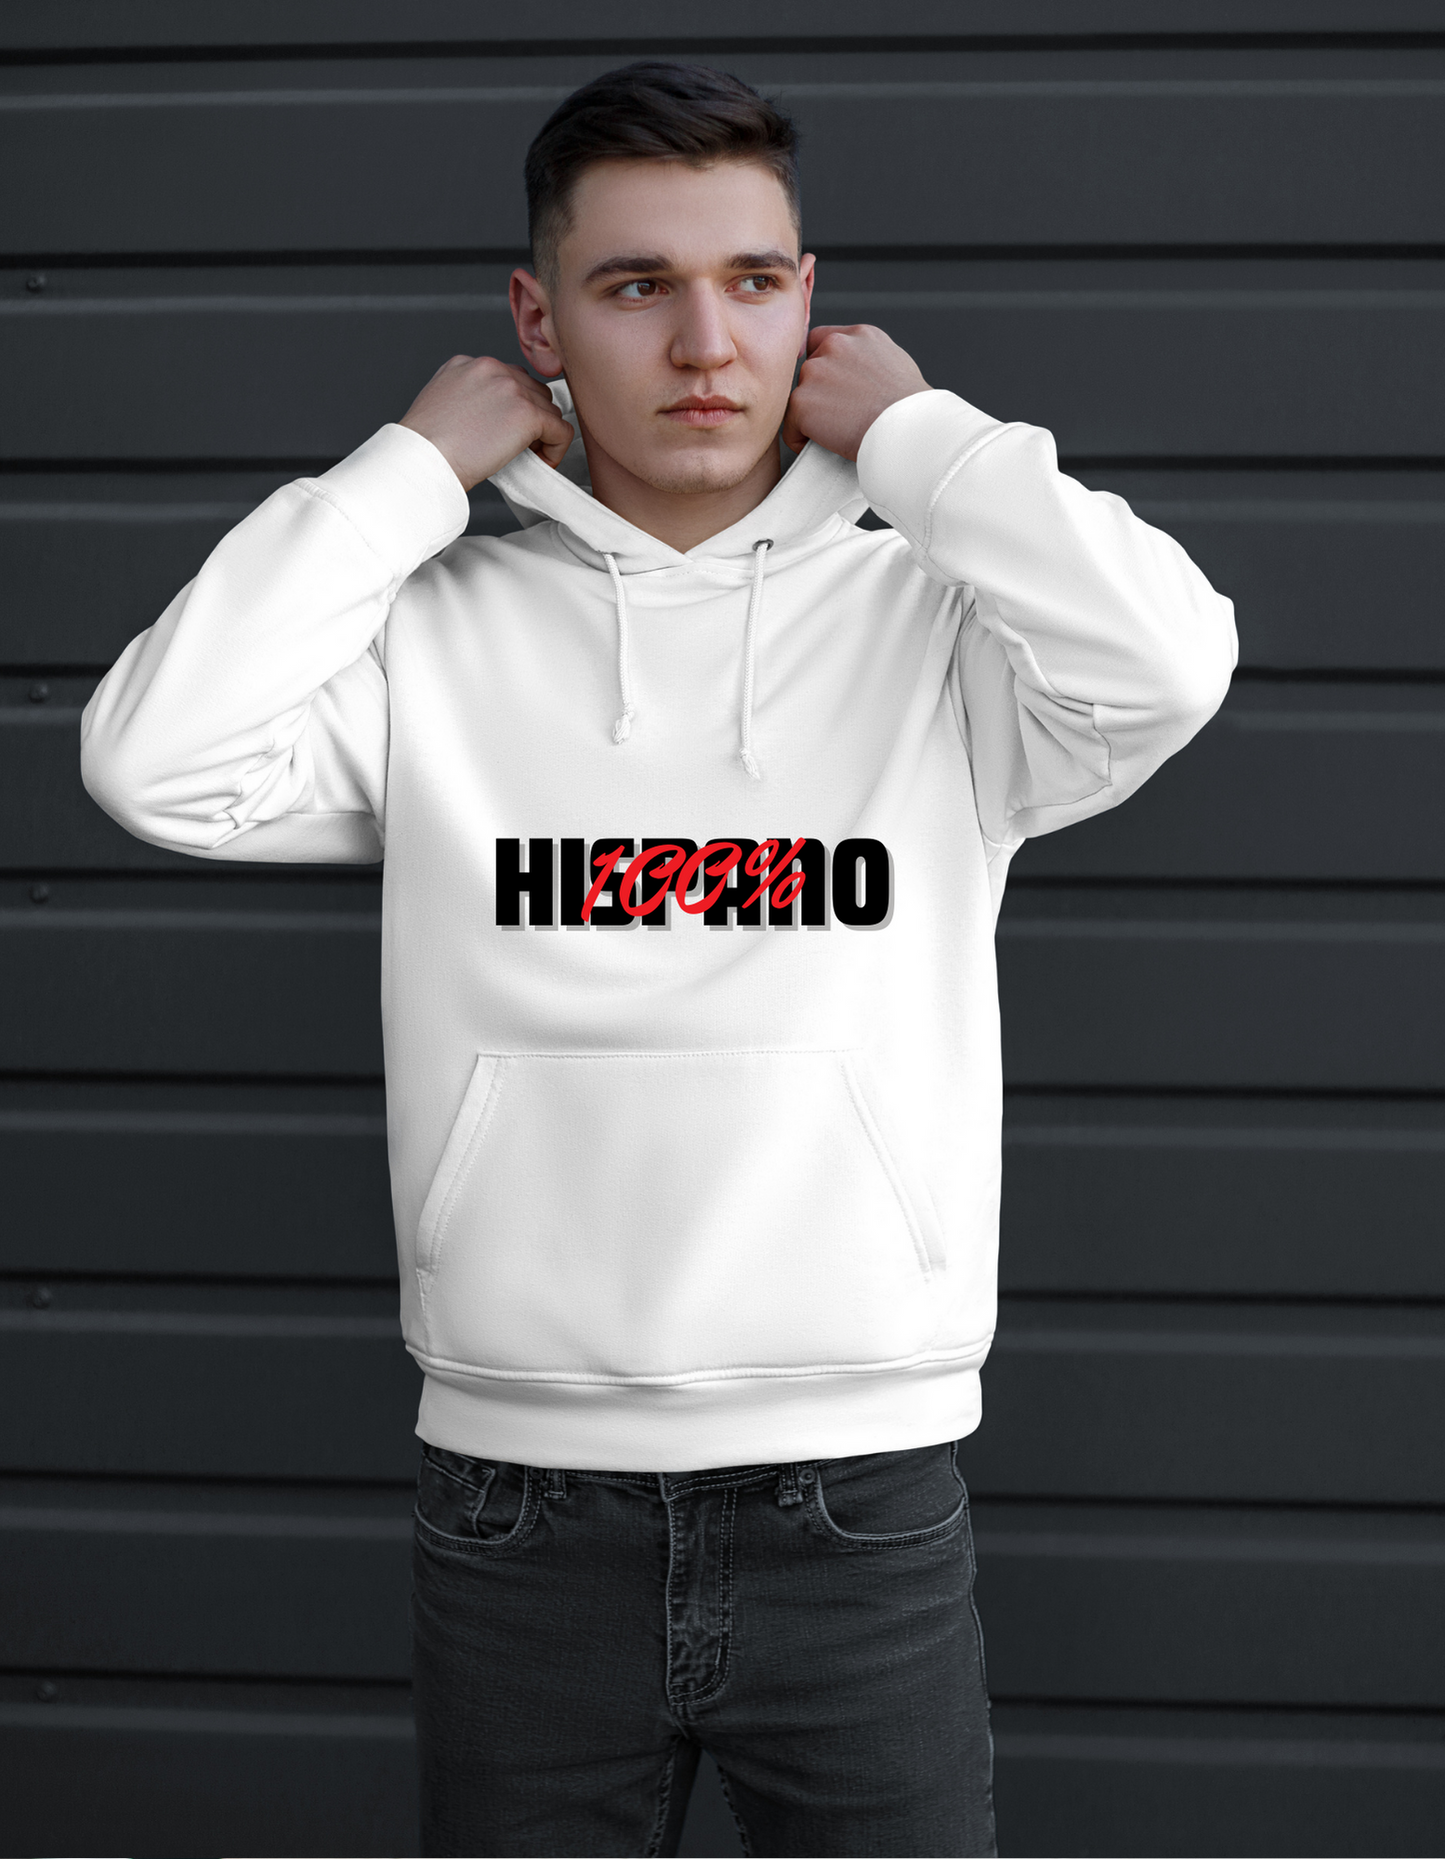 Hispanic T-shirt and Hoodie